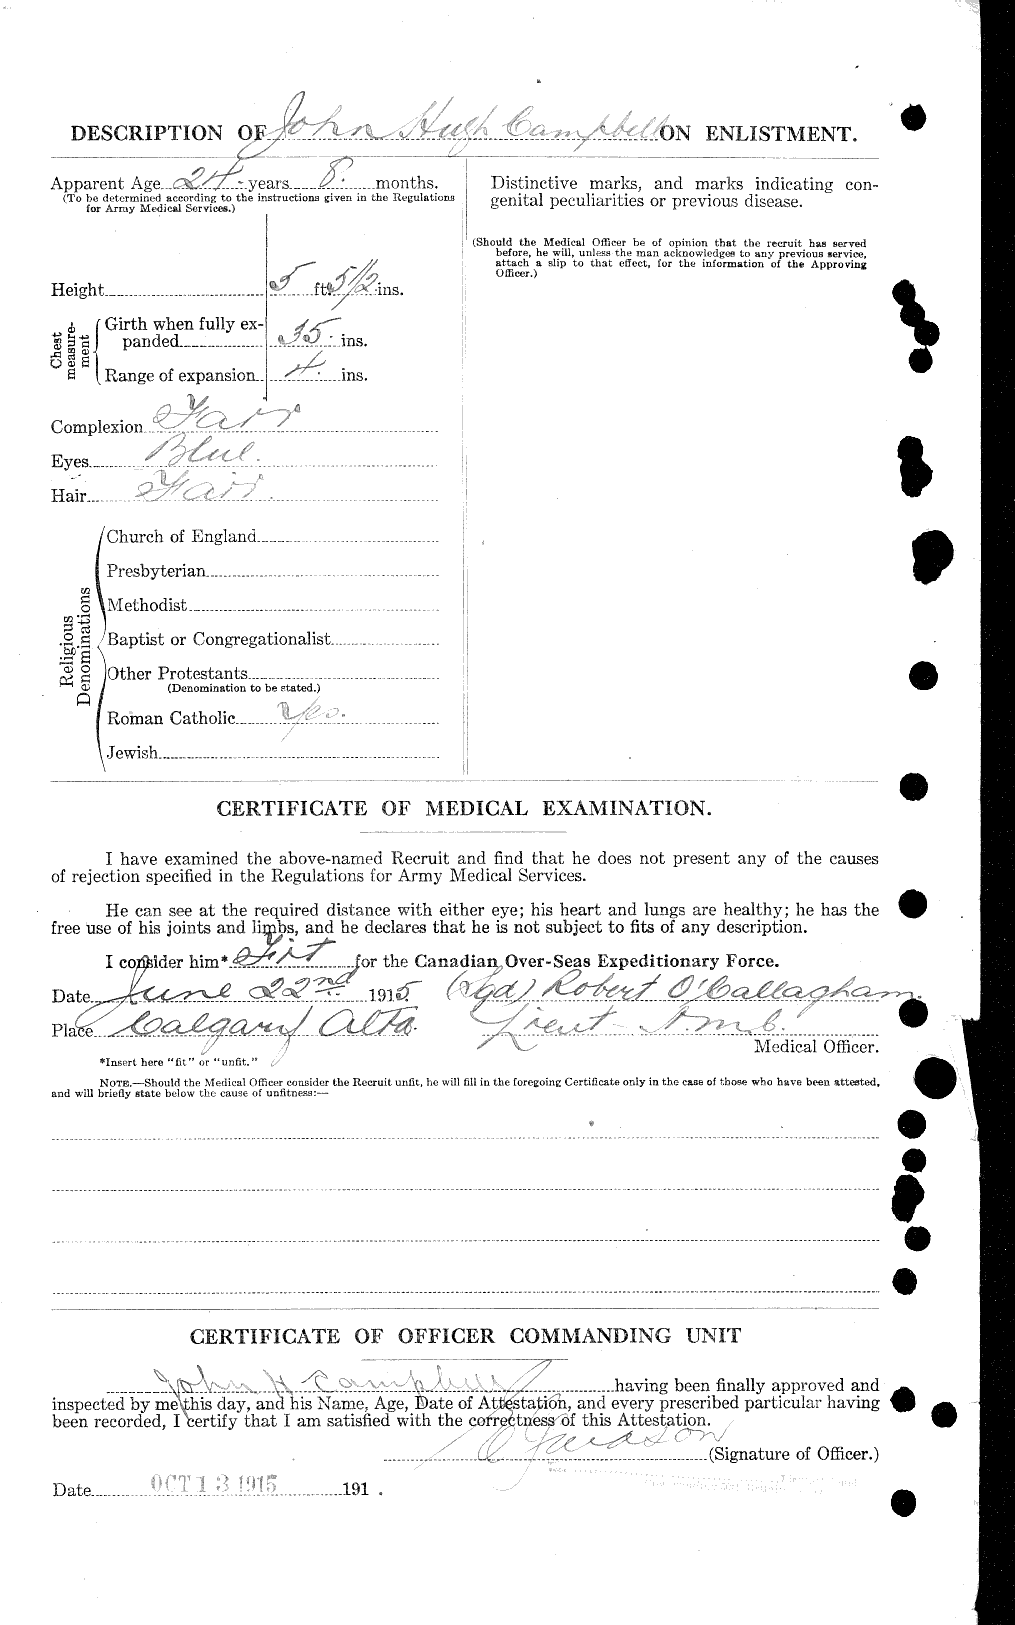 Dossiers du Personnel de la Première Guerre mondiale - CEC 008537b